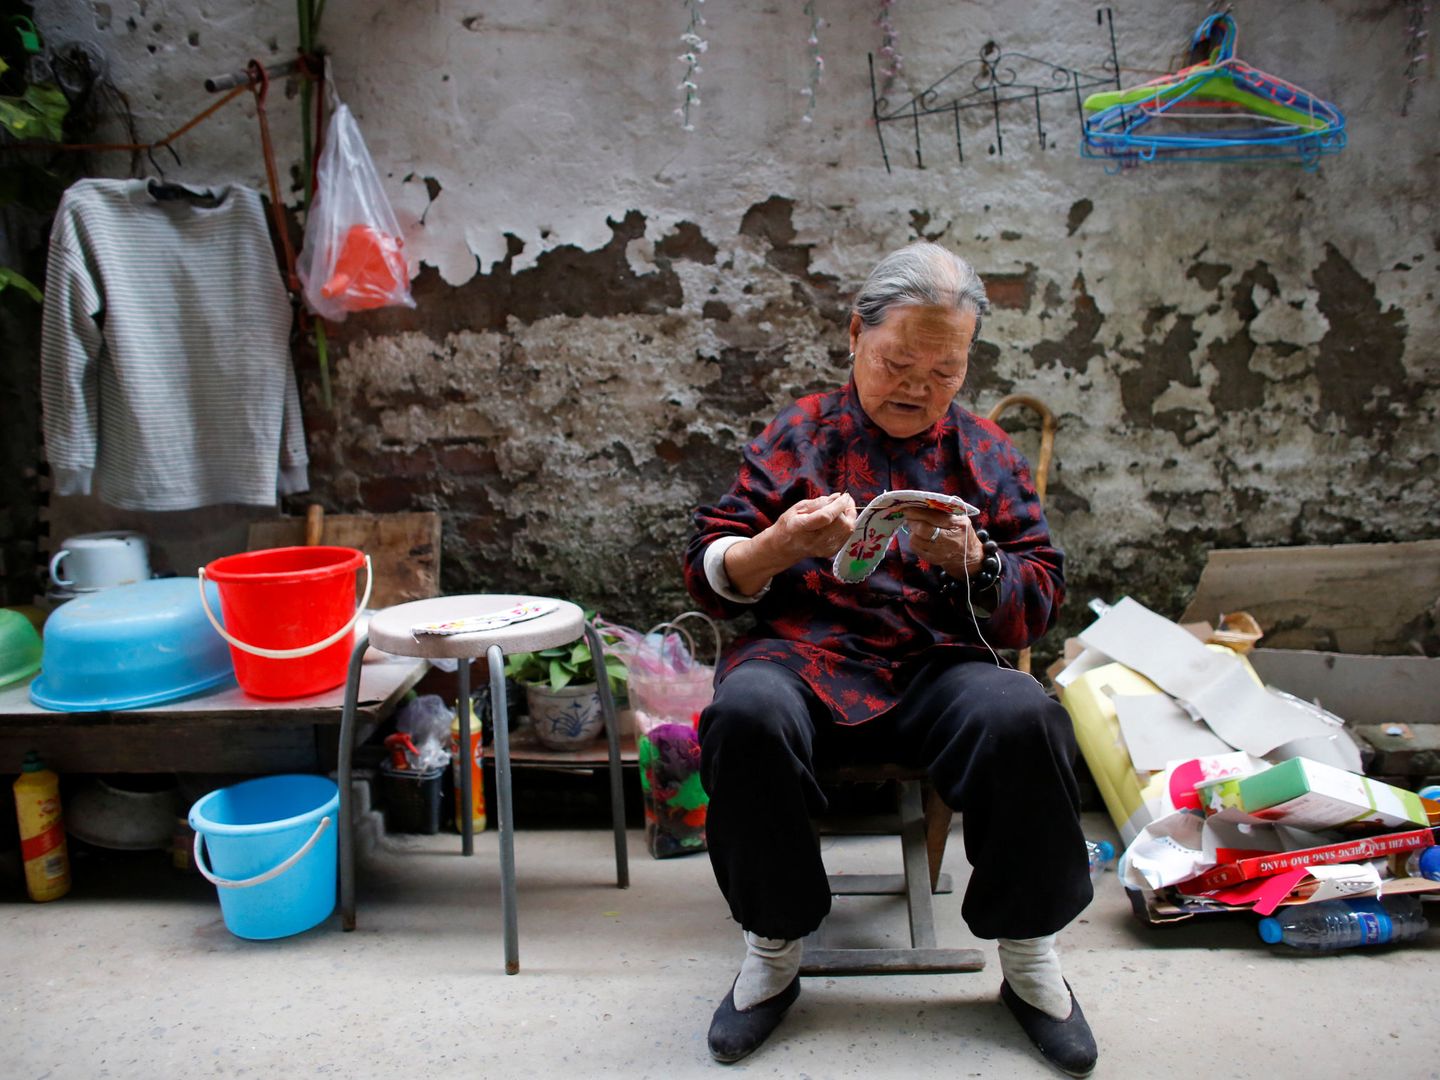 La señora Zhong, una inmigrante rural, remienda zapatos en el patio de su casa en el extrarradio de Pekín, el 1 de octubre de 2017. (Reuters)